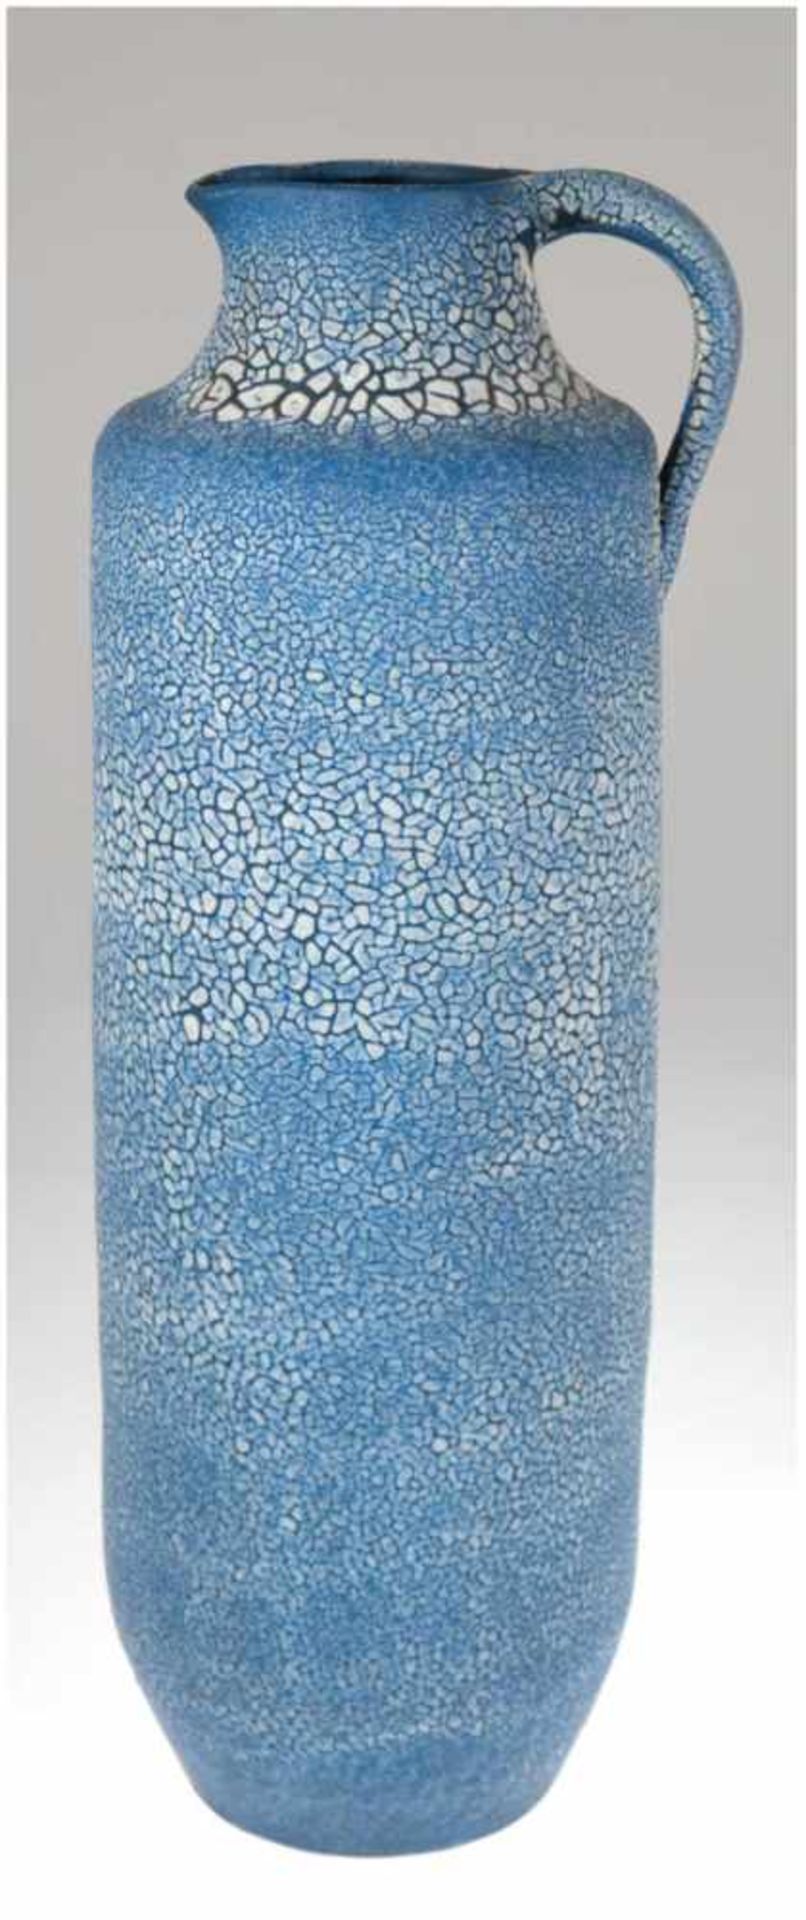 Bodenvase, Albert Kiessling, Langenhessen, Bodenmarke, handgedreht, weiße Schrumpfglasurauf blauem